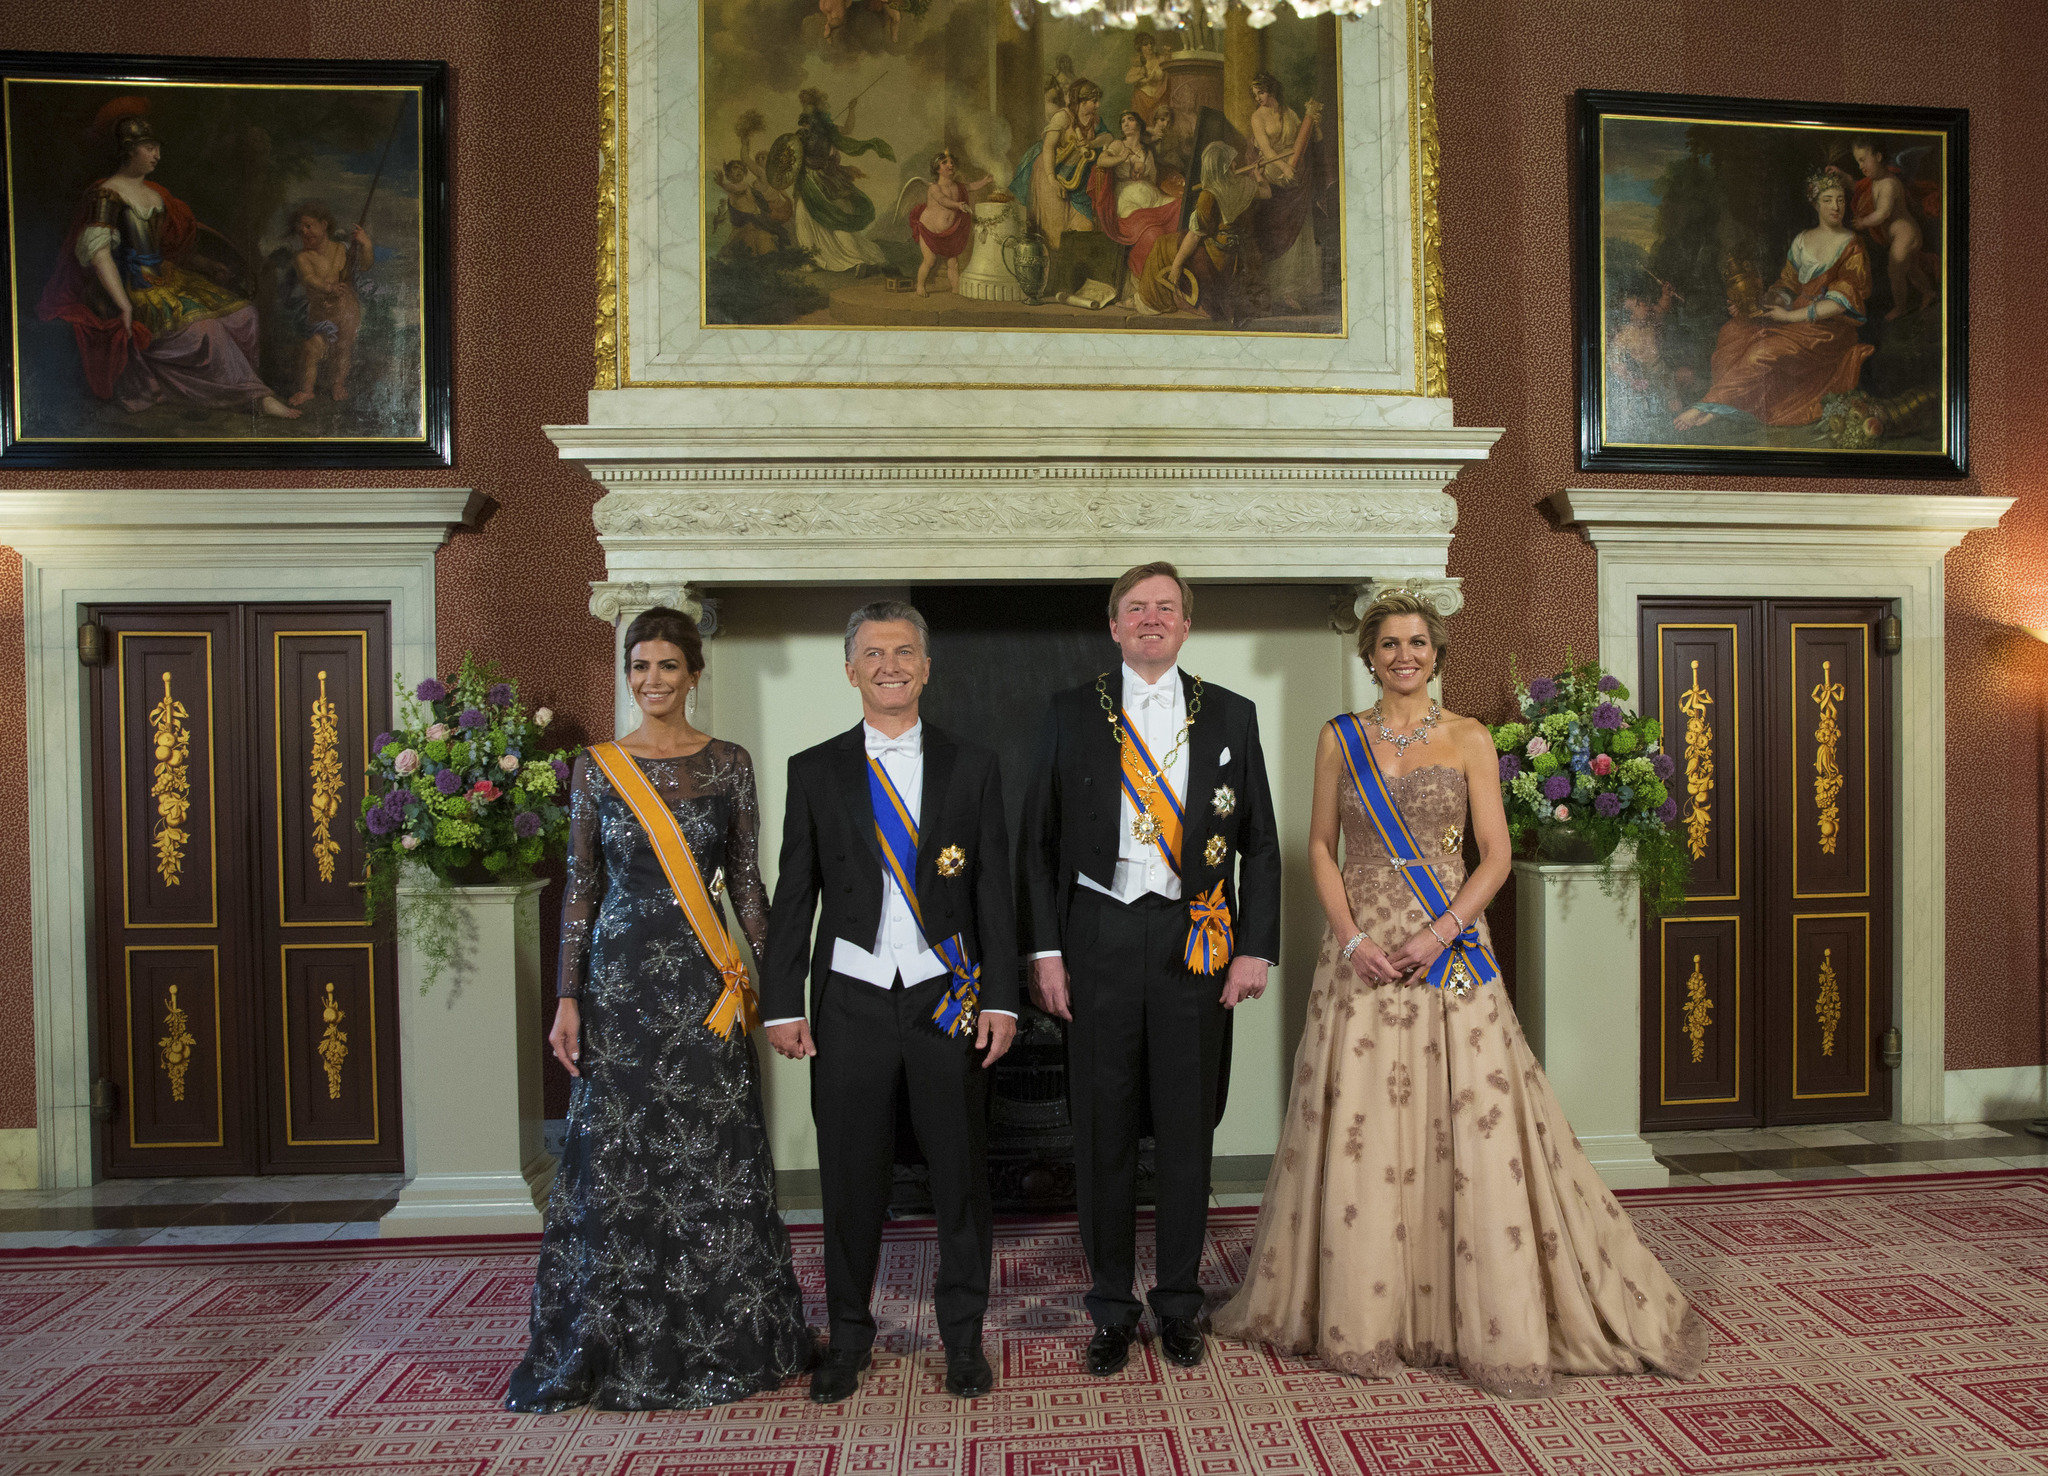 La cena de gala oficial en el Palacio Real de msterdam.